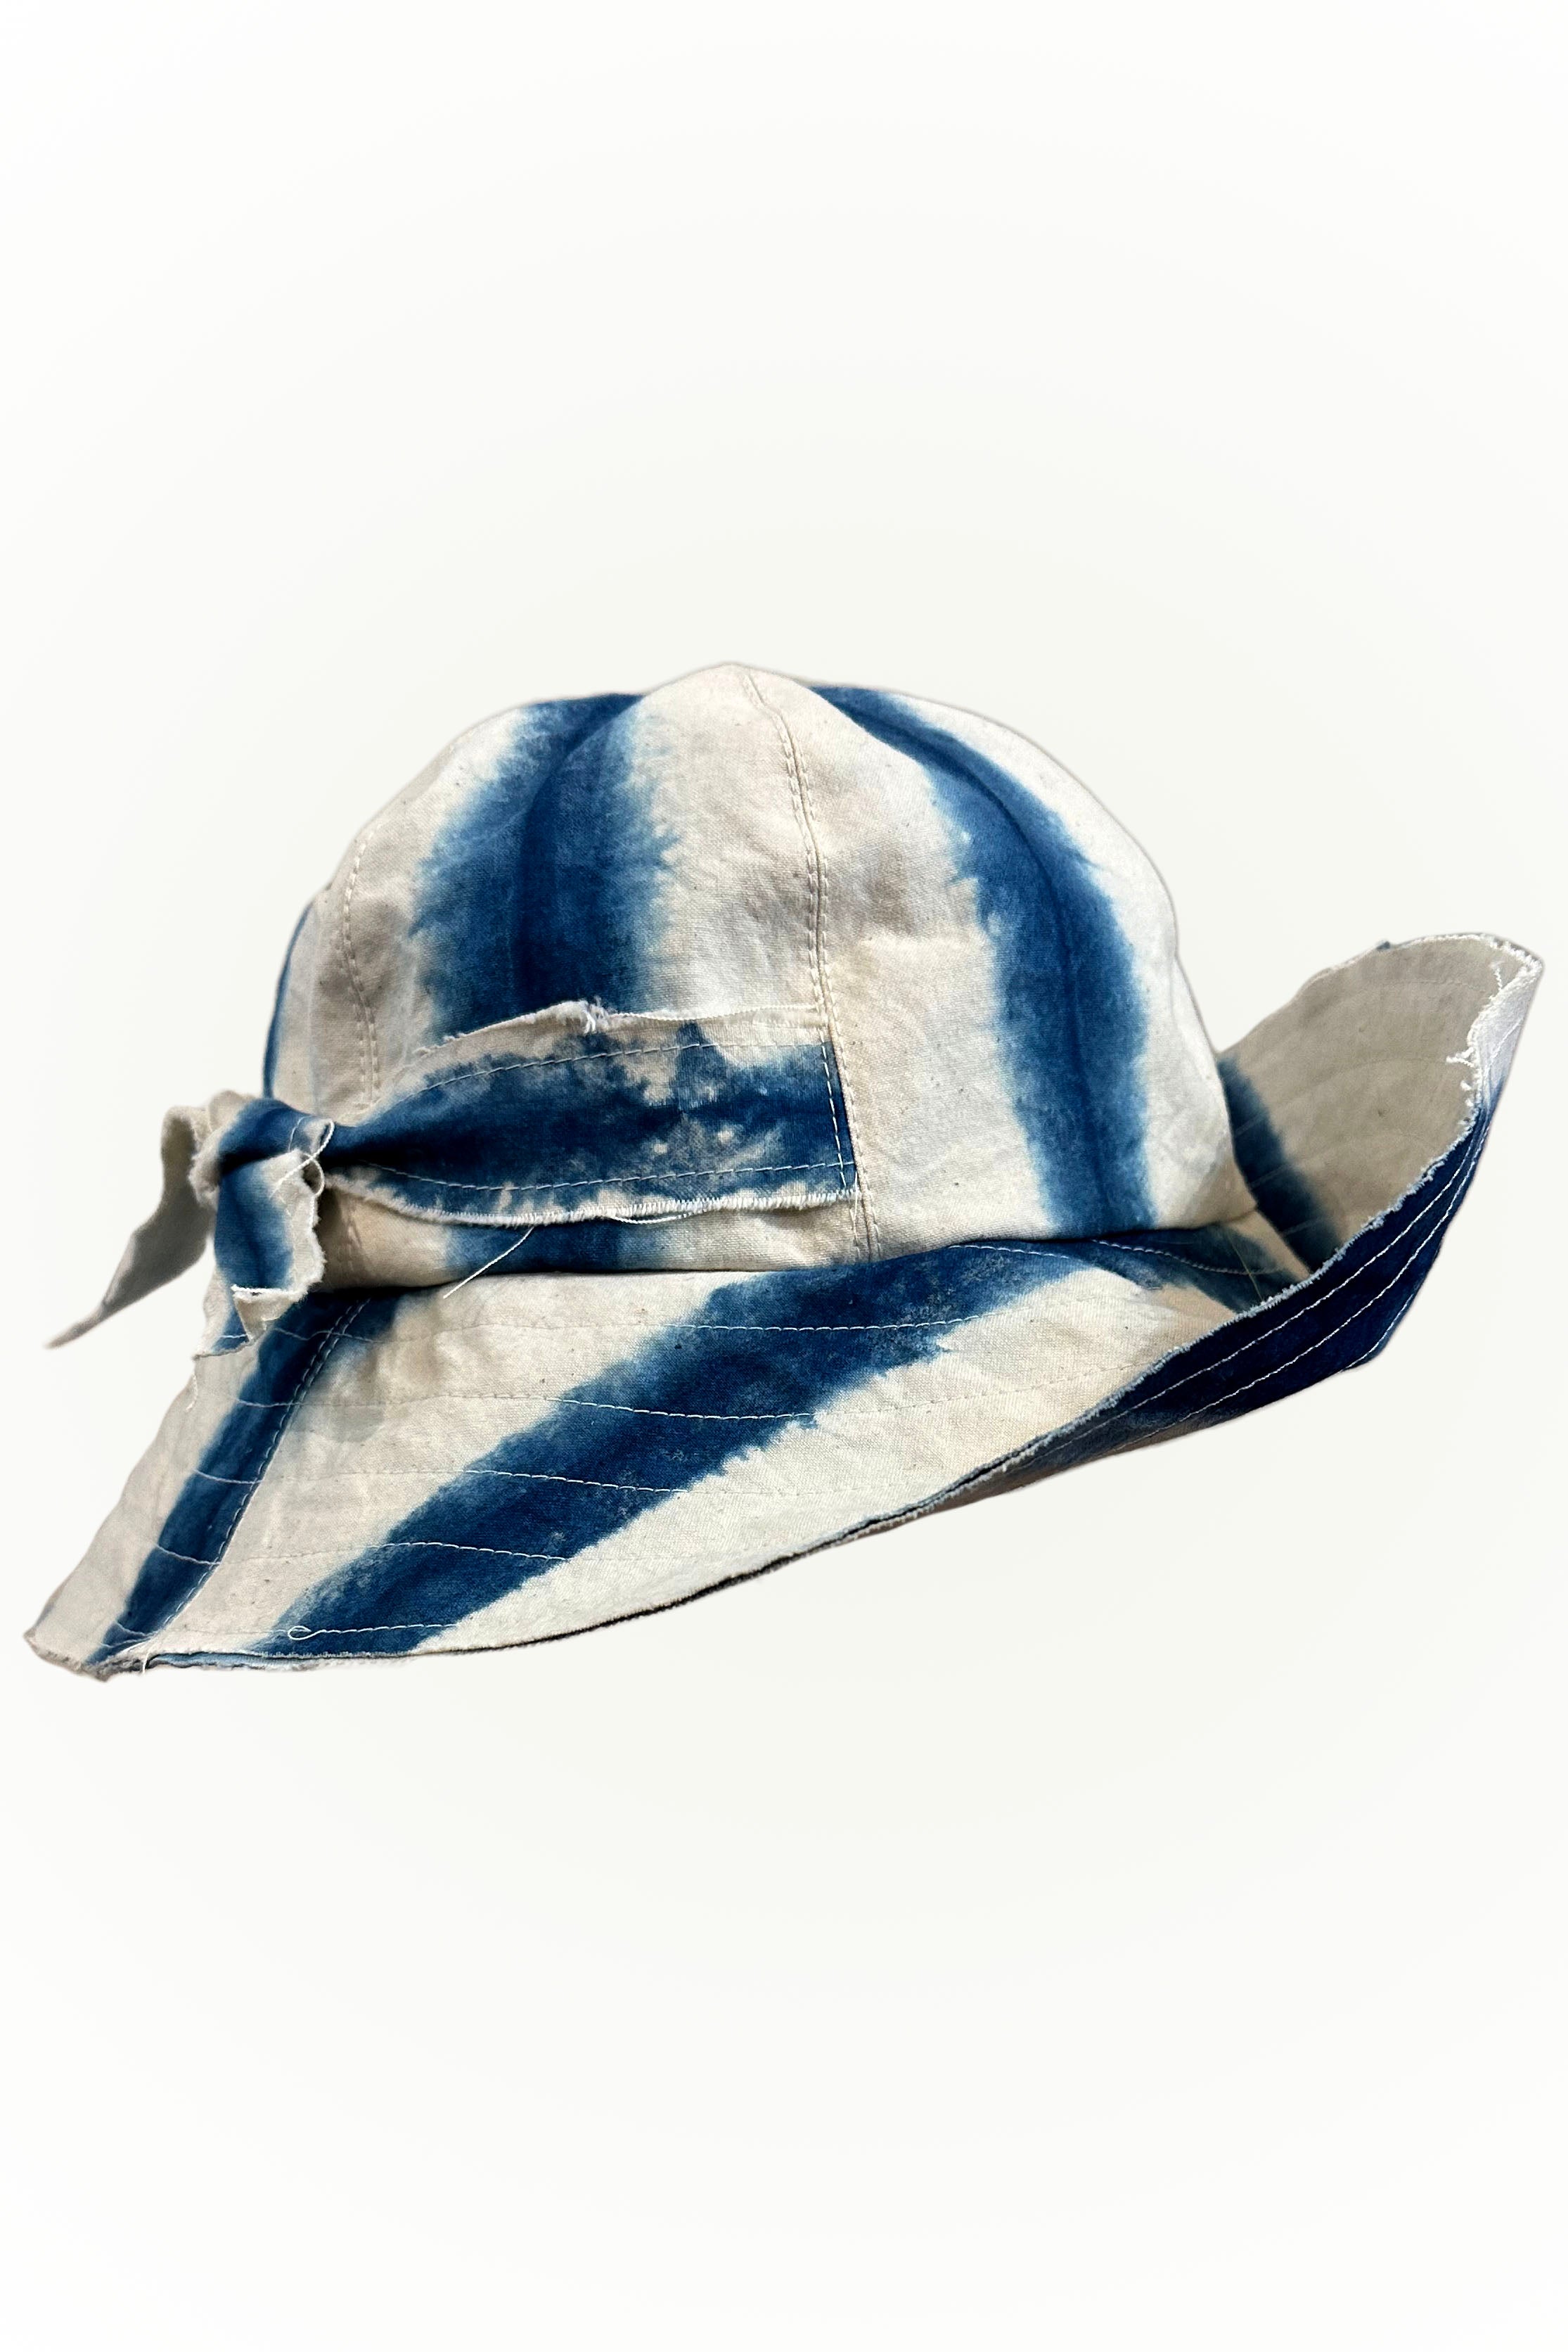 Brighton Hat w/ Round Top - Indigo & Natural